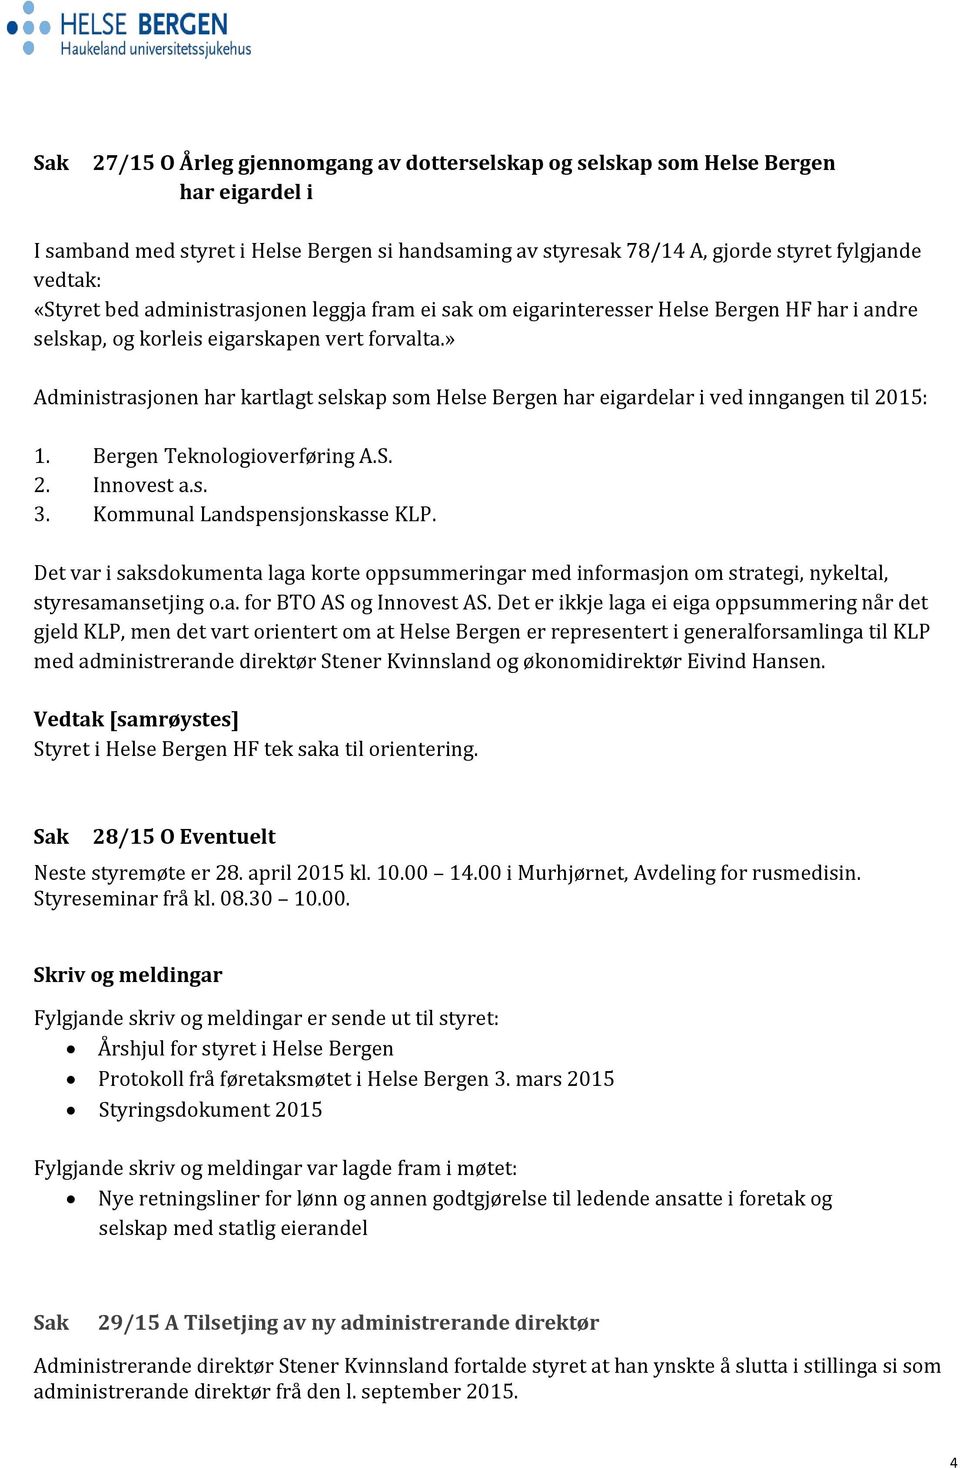 » Administrasjonen har kartlagt selskap som Helse Bergen har eigardelar i ved inngangen til 2015: 1. Bergen Teknologioverføring A.S. 2. Innovest a.s. 3. Kommunal Landspensjonskasse KLP.